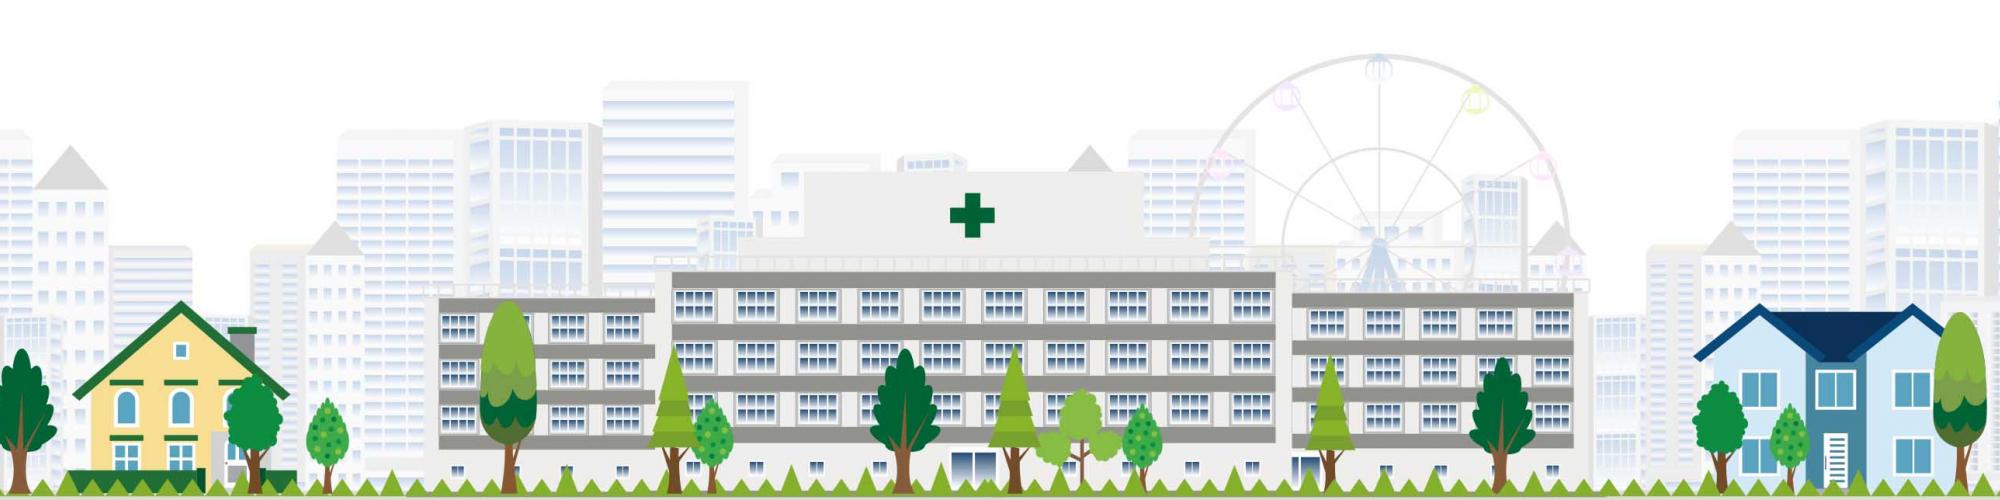 Gesundheitszentrum Odenwald Kreis GmbH